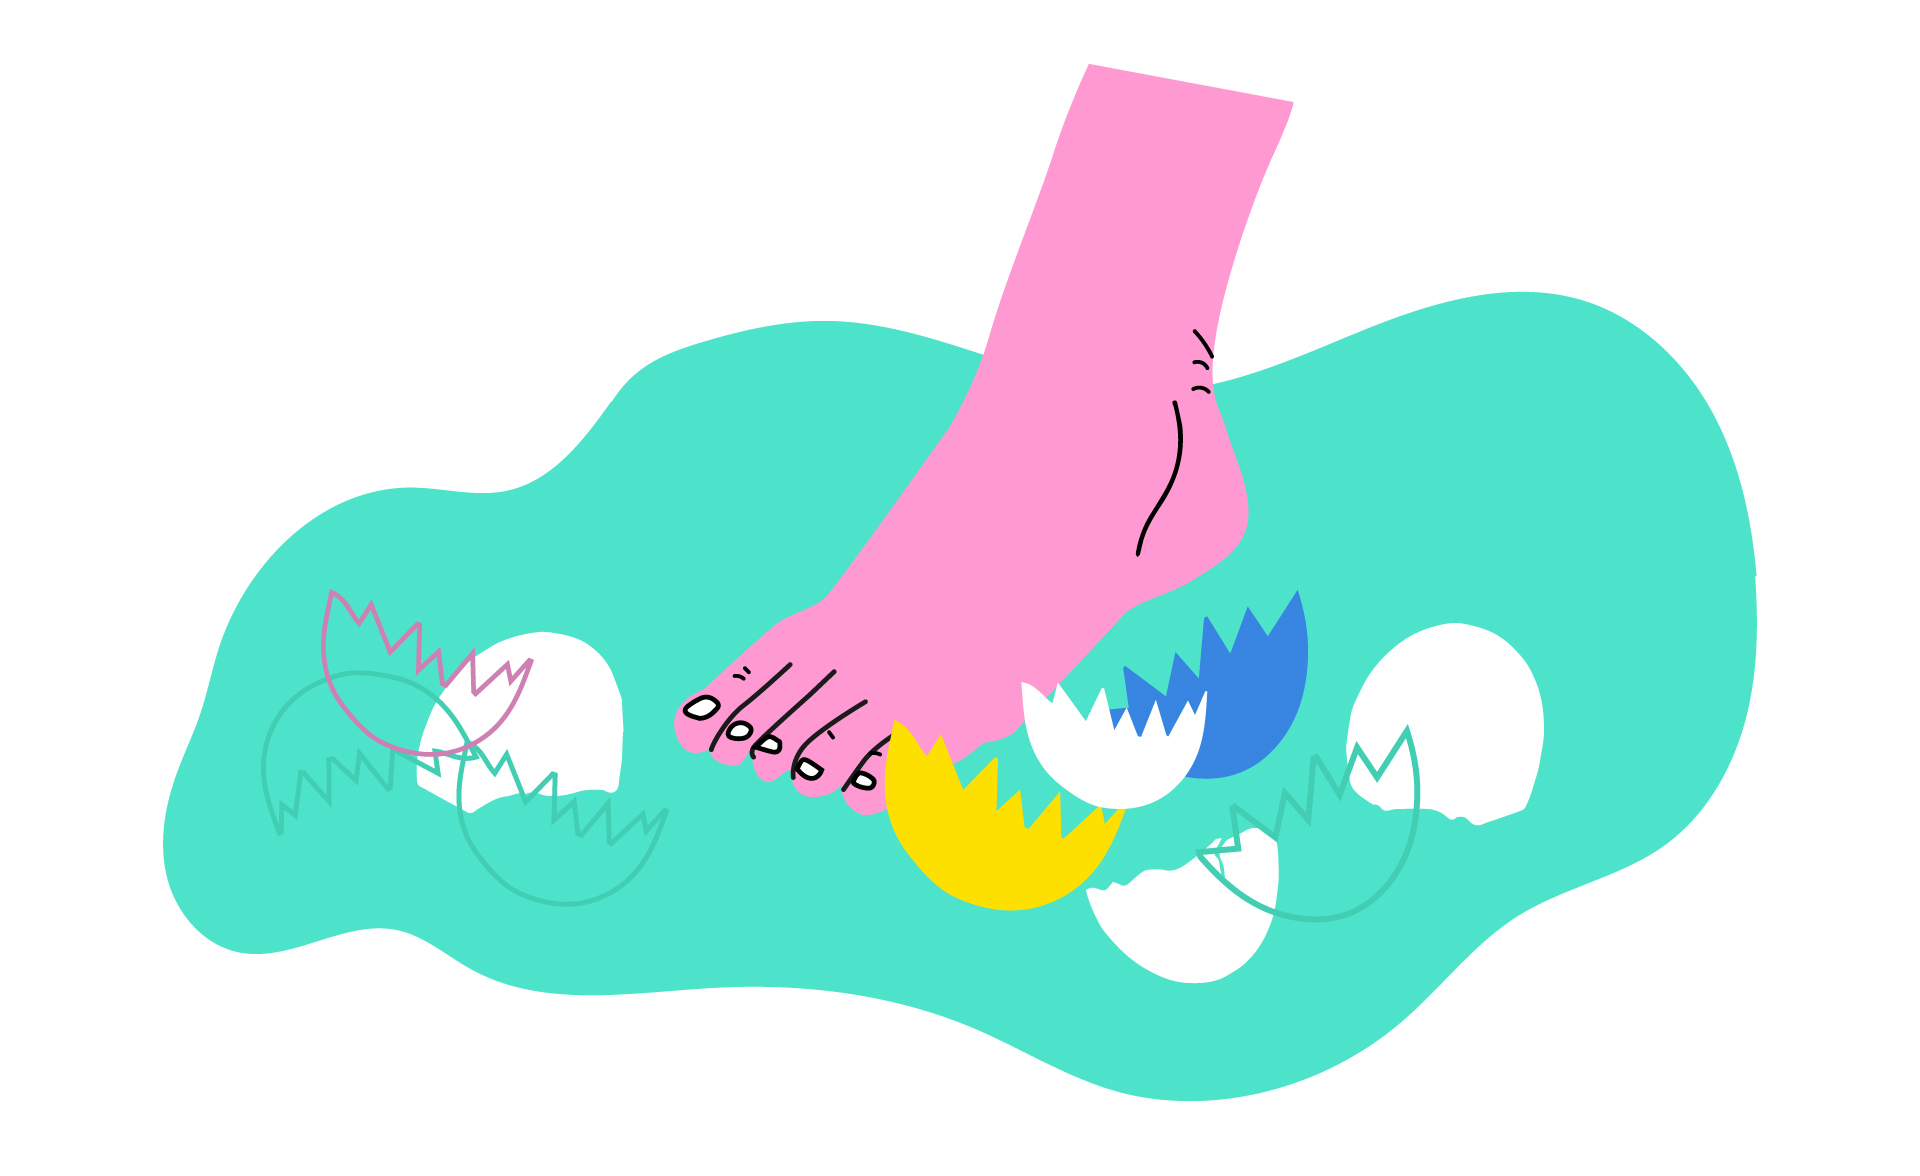 Teikning av ein rosa fot som trår forsiktig på golvet. Rundt ligg mange knuste eggeskal i forskjellig fargar. Bakgrunnen er grøn.